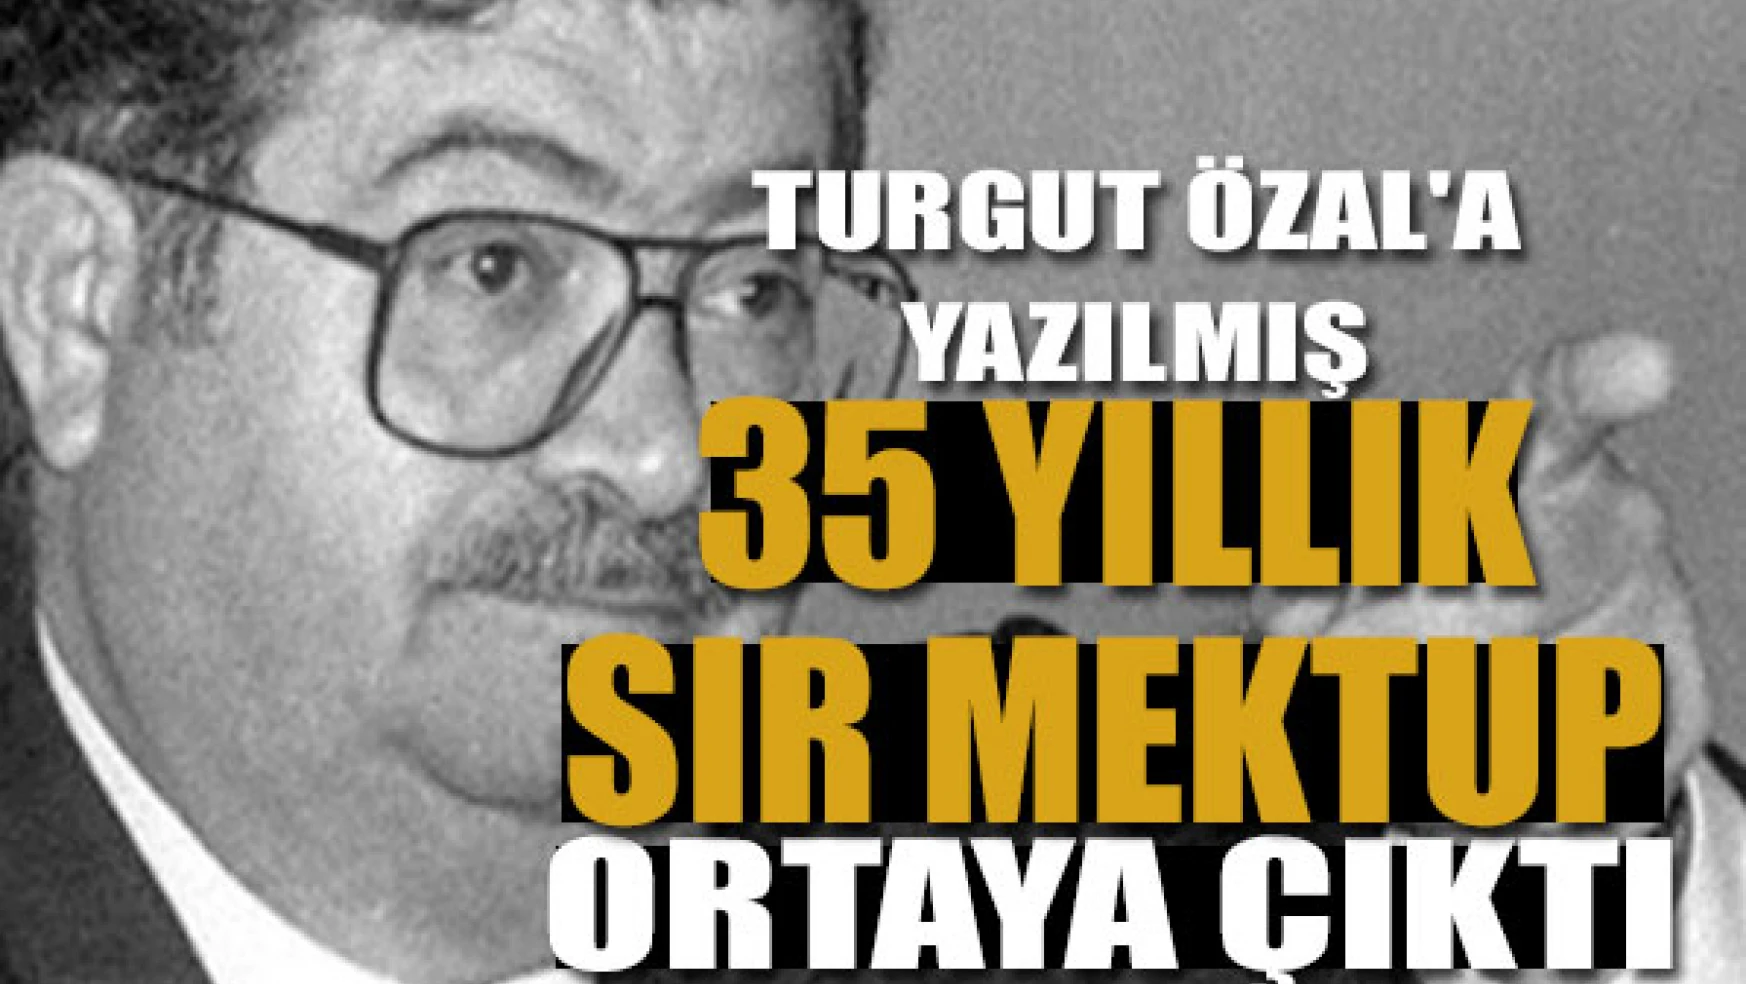 Turgut Özal'a yazılmış 35 yıllık sır mektup ortaya çıktı